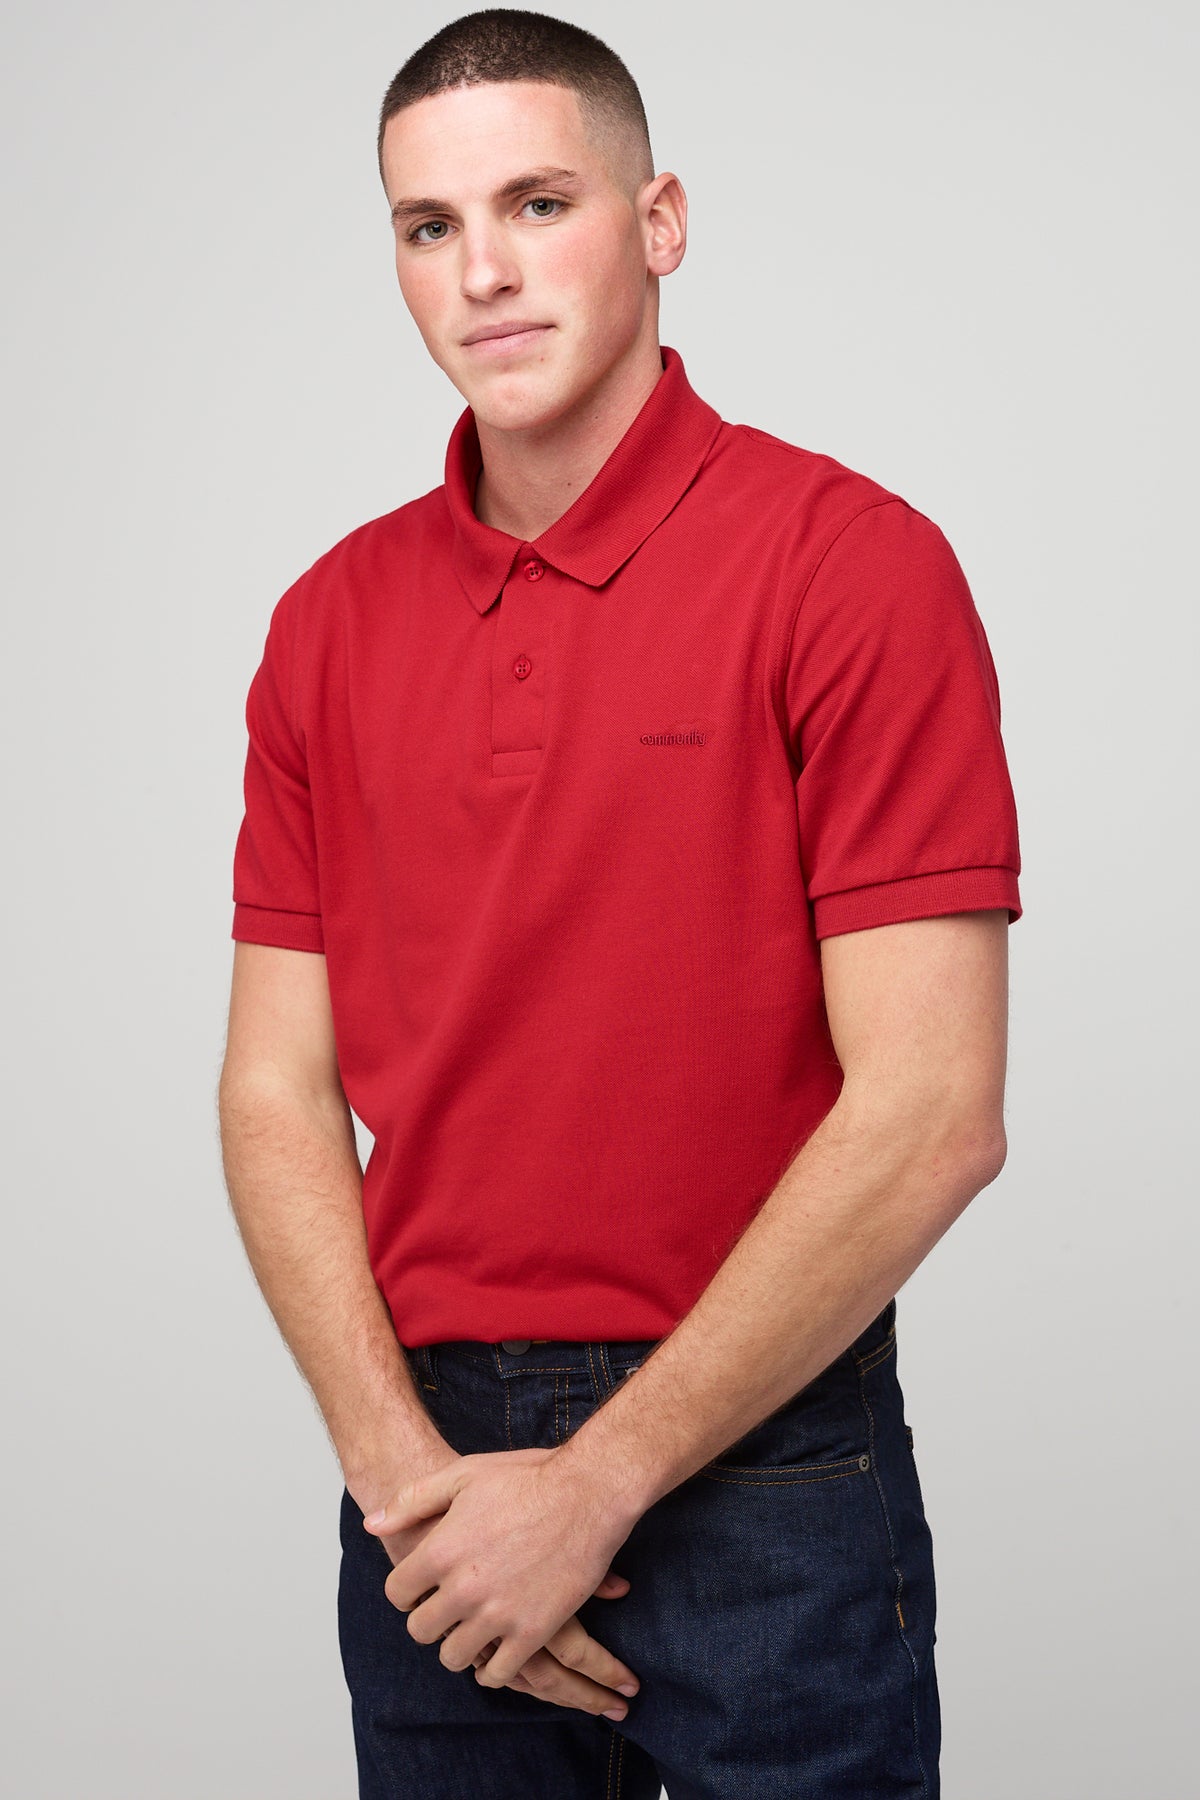 
            Brunnet male in short sleeve polo shirt crimson